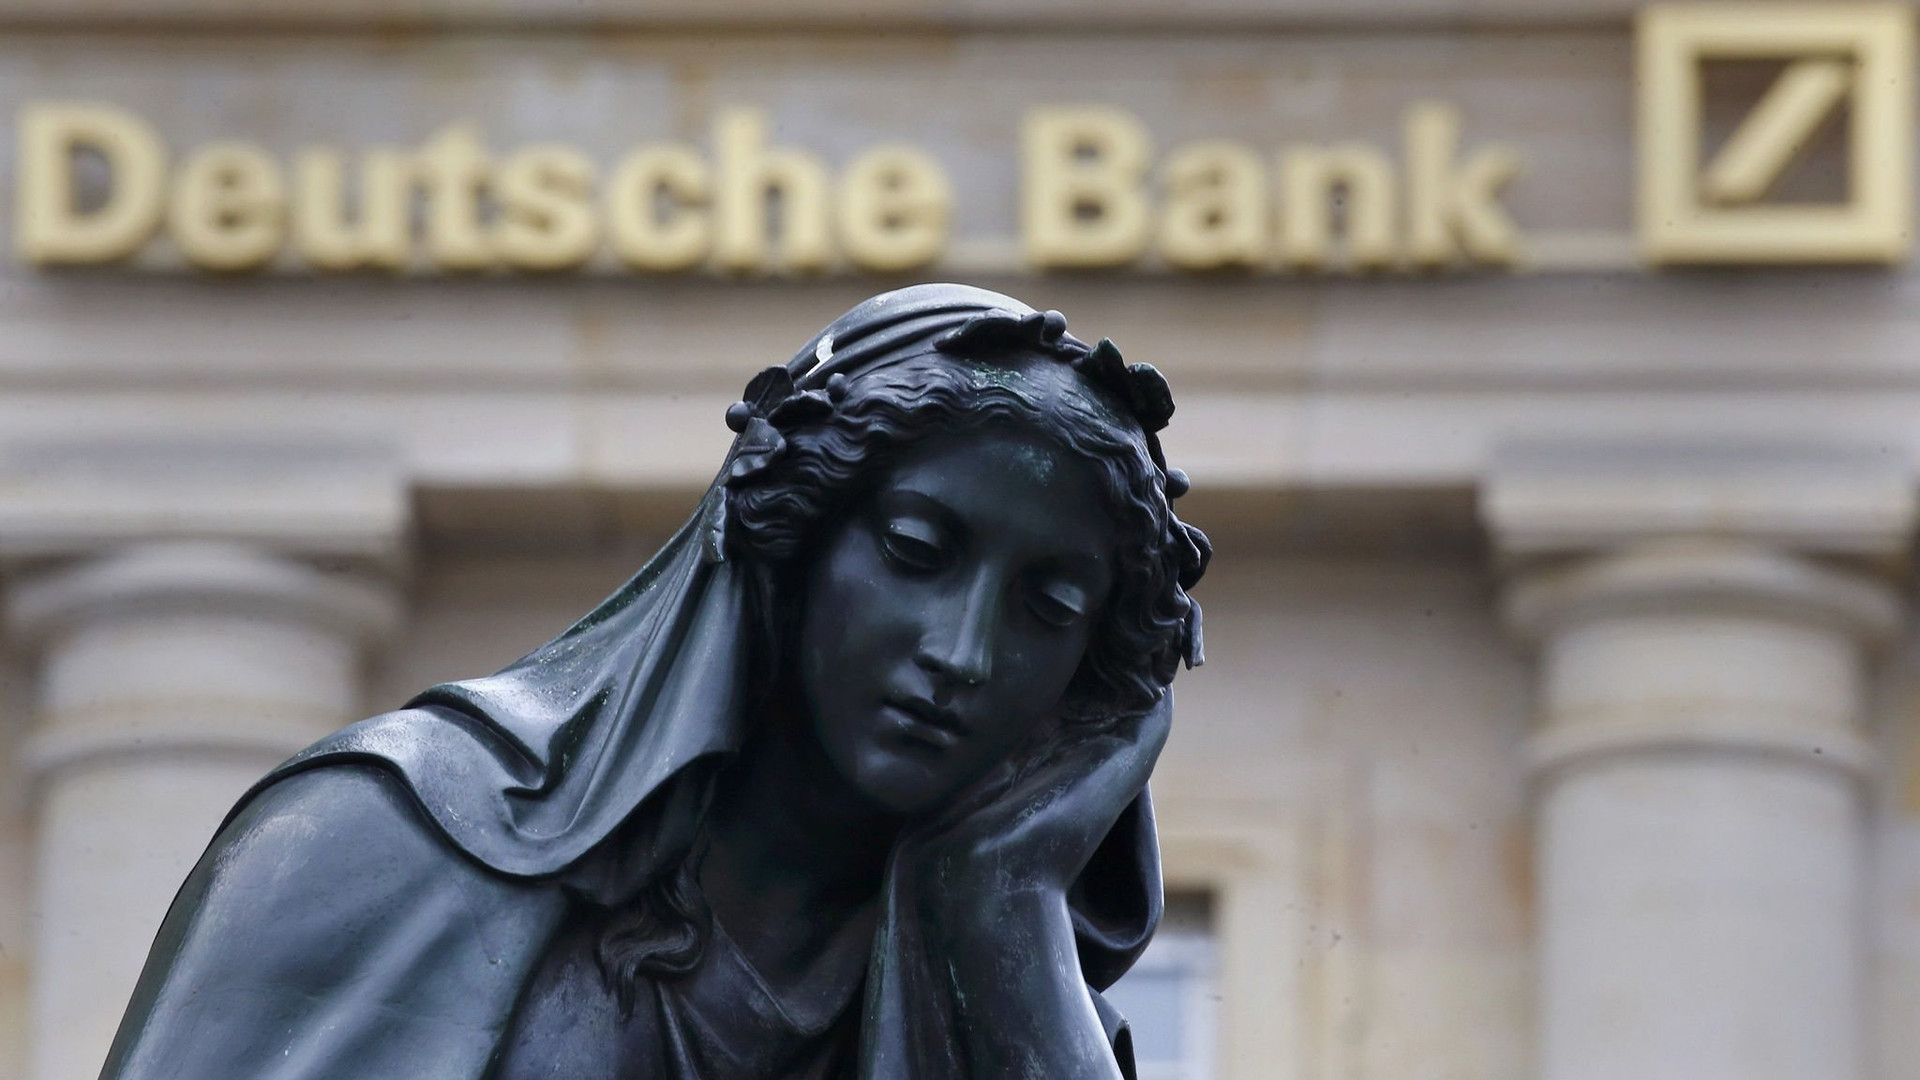 Được đánh giá là ngân hàng có 'sức khoẻ tốt' nhưng cổ phiếu vẫn bị bán mạnh, chuyện gì đang xảy ra ở Deutsche Bank? 